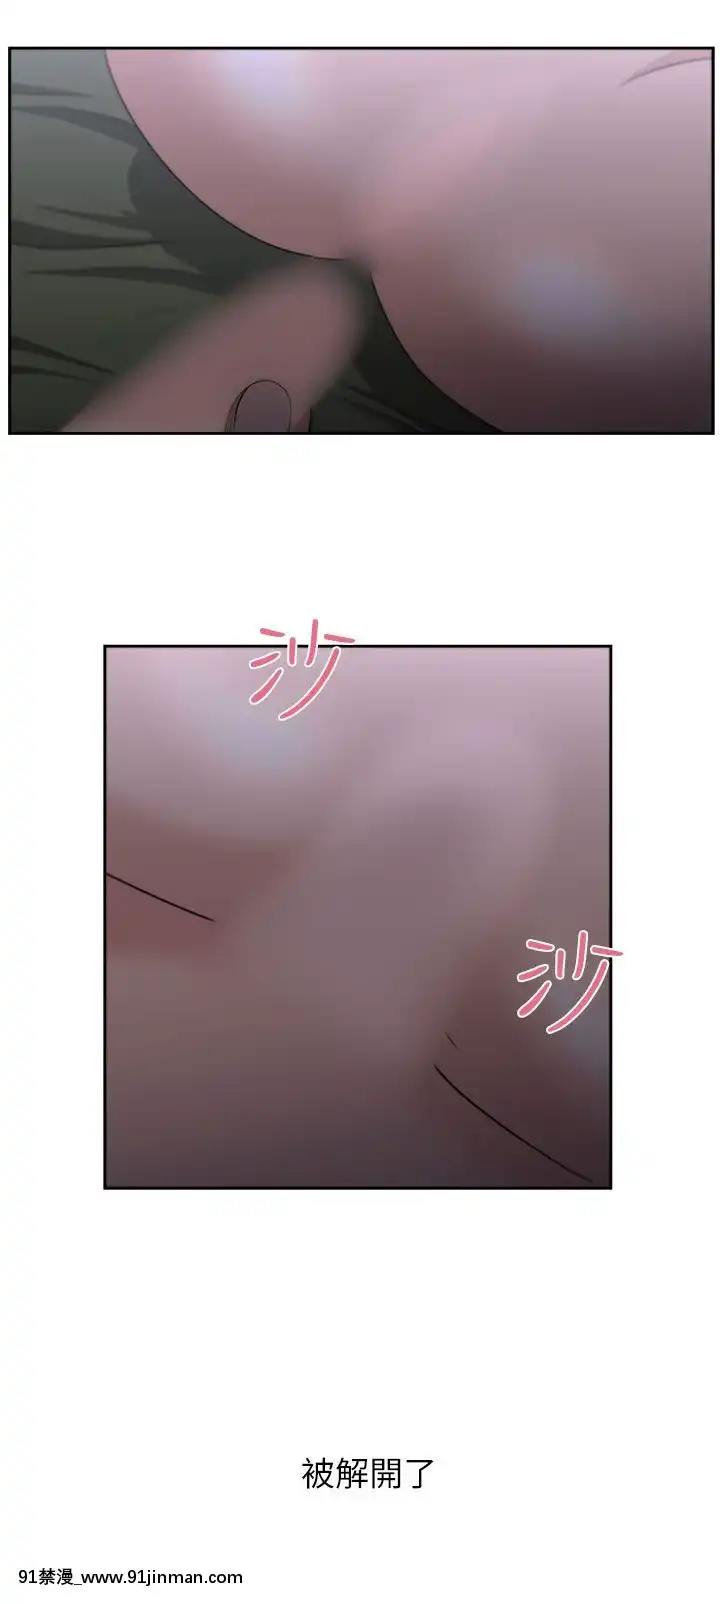 Chương 1   24 [Hoàn thành]【hentai 3ping lovers vietsub】